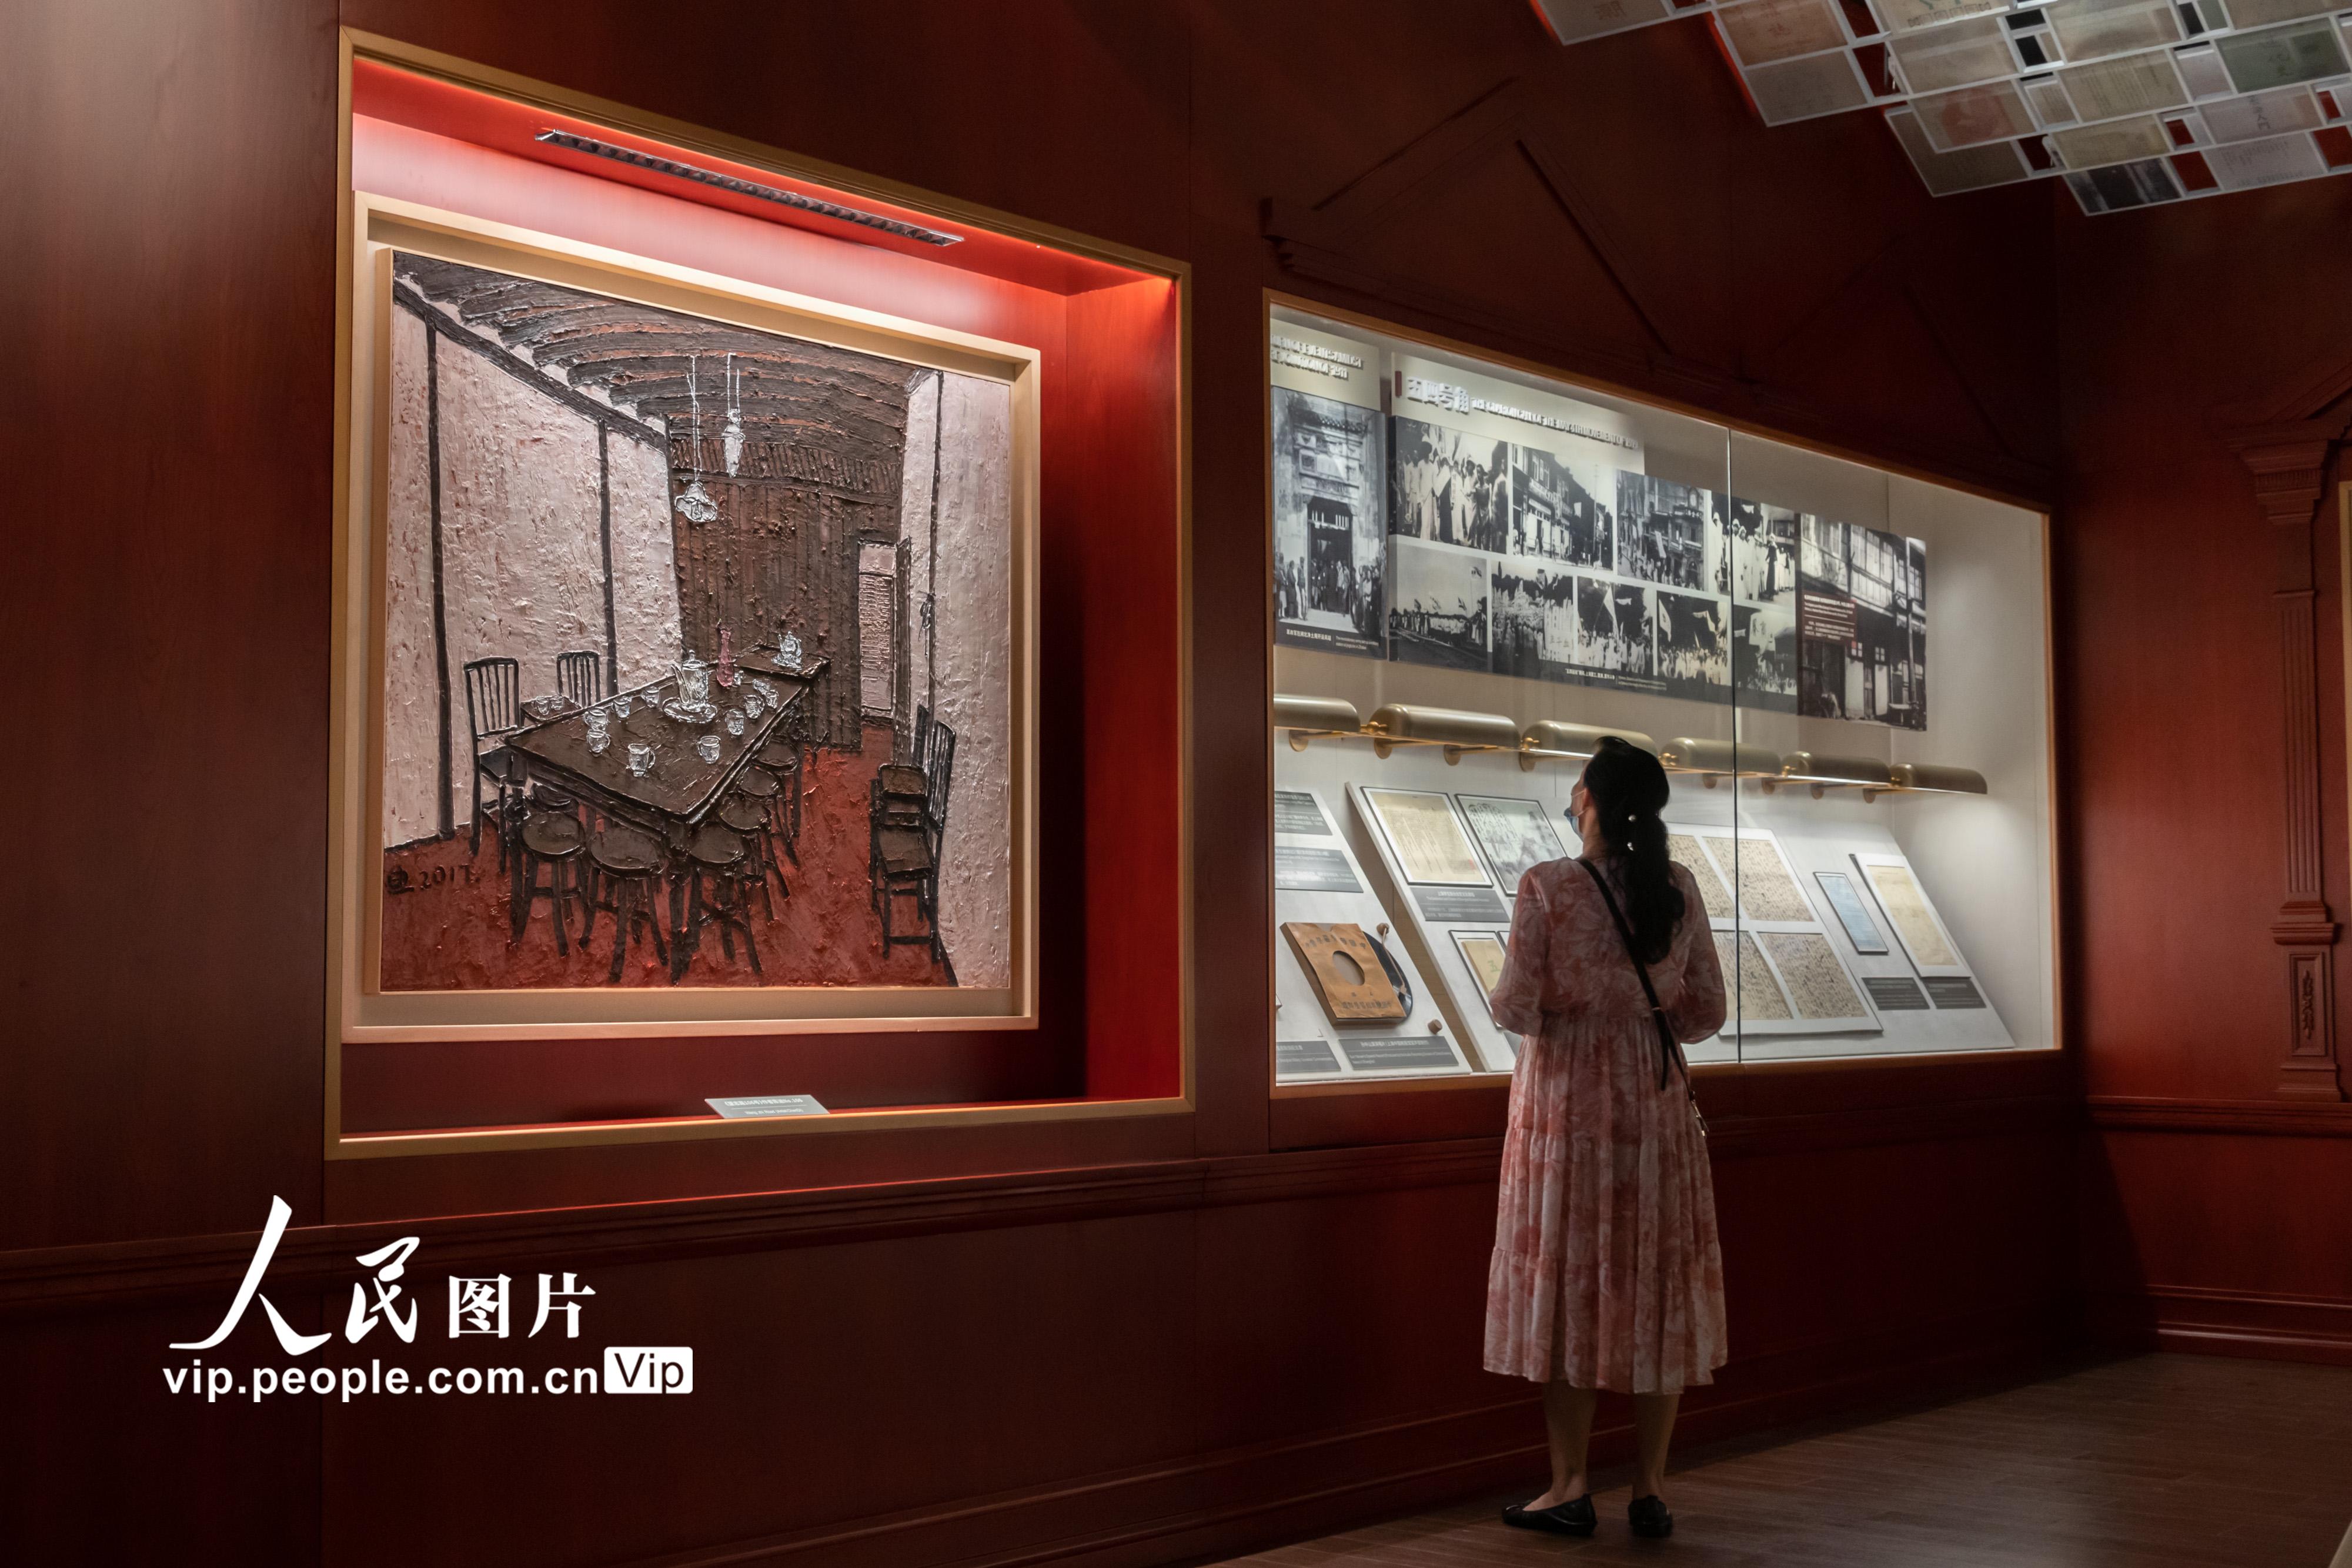 上海市檔案館新館投入運行 “城市記憶 時光珍藏”主題展向公眾開放【6】